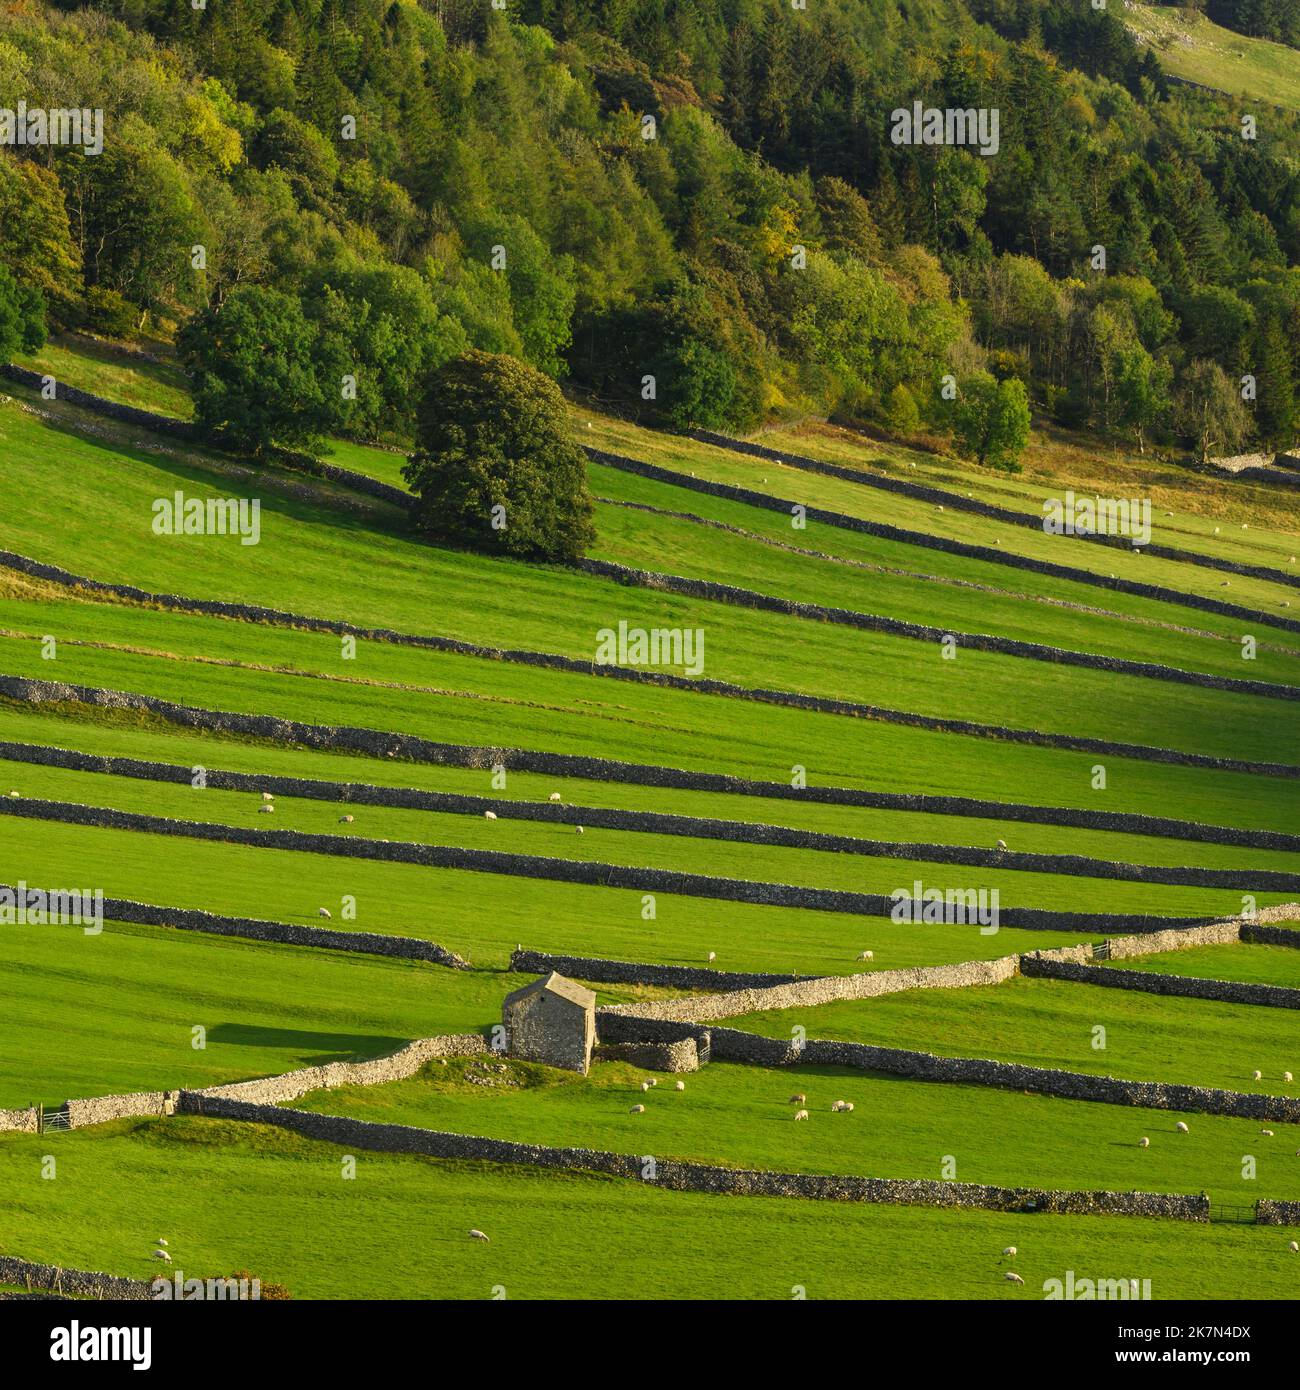 Paysage pittoresque de Wharfedale (pente de la vallée, arbres boisés, colline, ancienne grange rustique en pierre, systèmes de terrain) - Kettlewell, Yorkshire Dales, Angleterre, Royaume-Uni. Banque D'Images